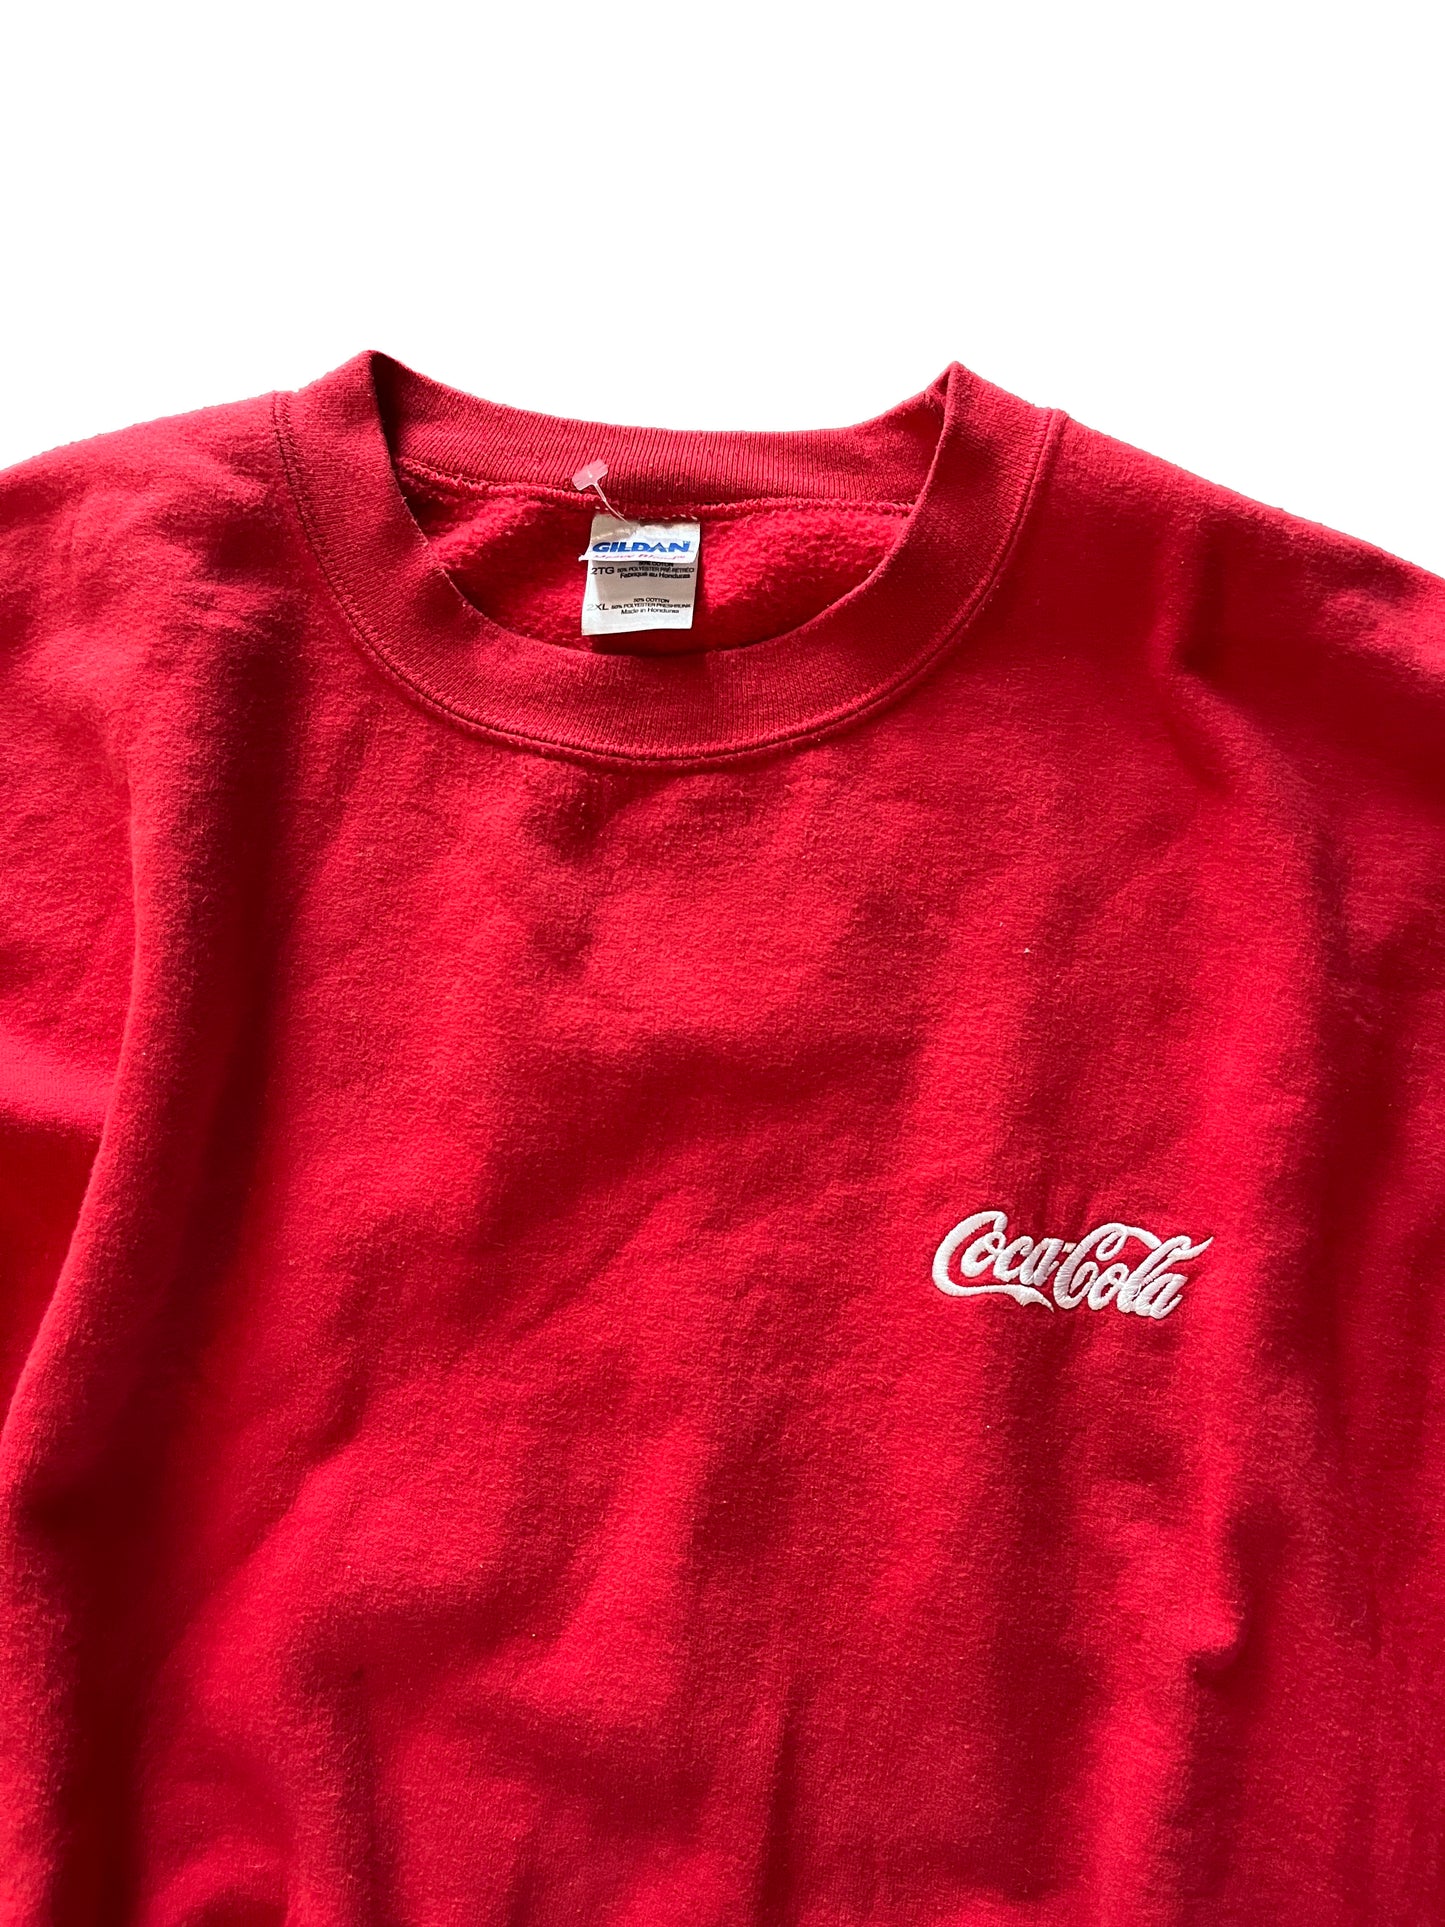 Vintage Heavyweight Coca-Cola Sweatshirt